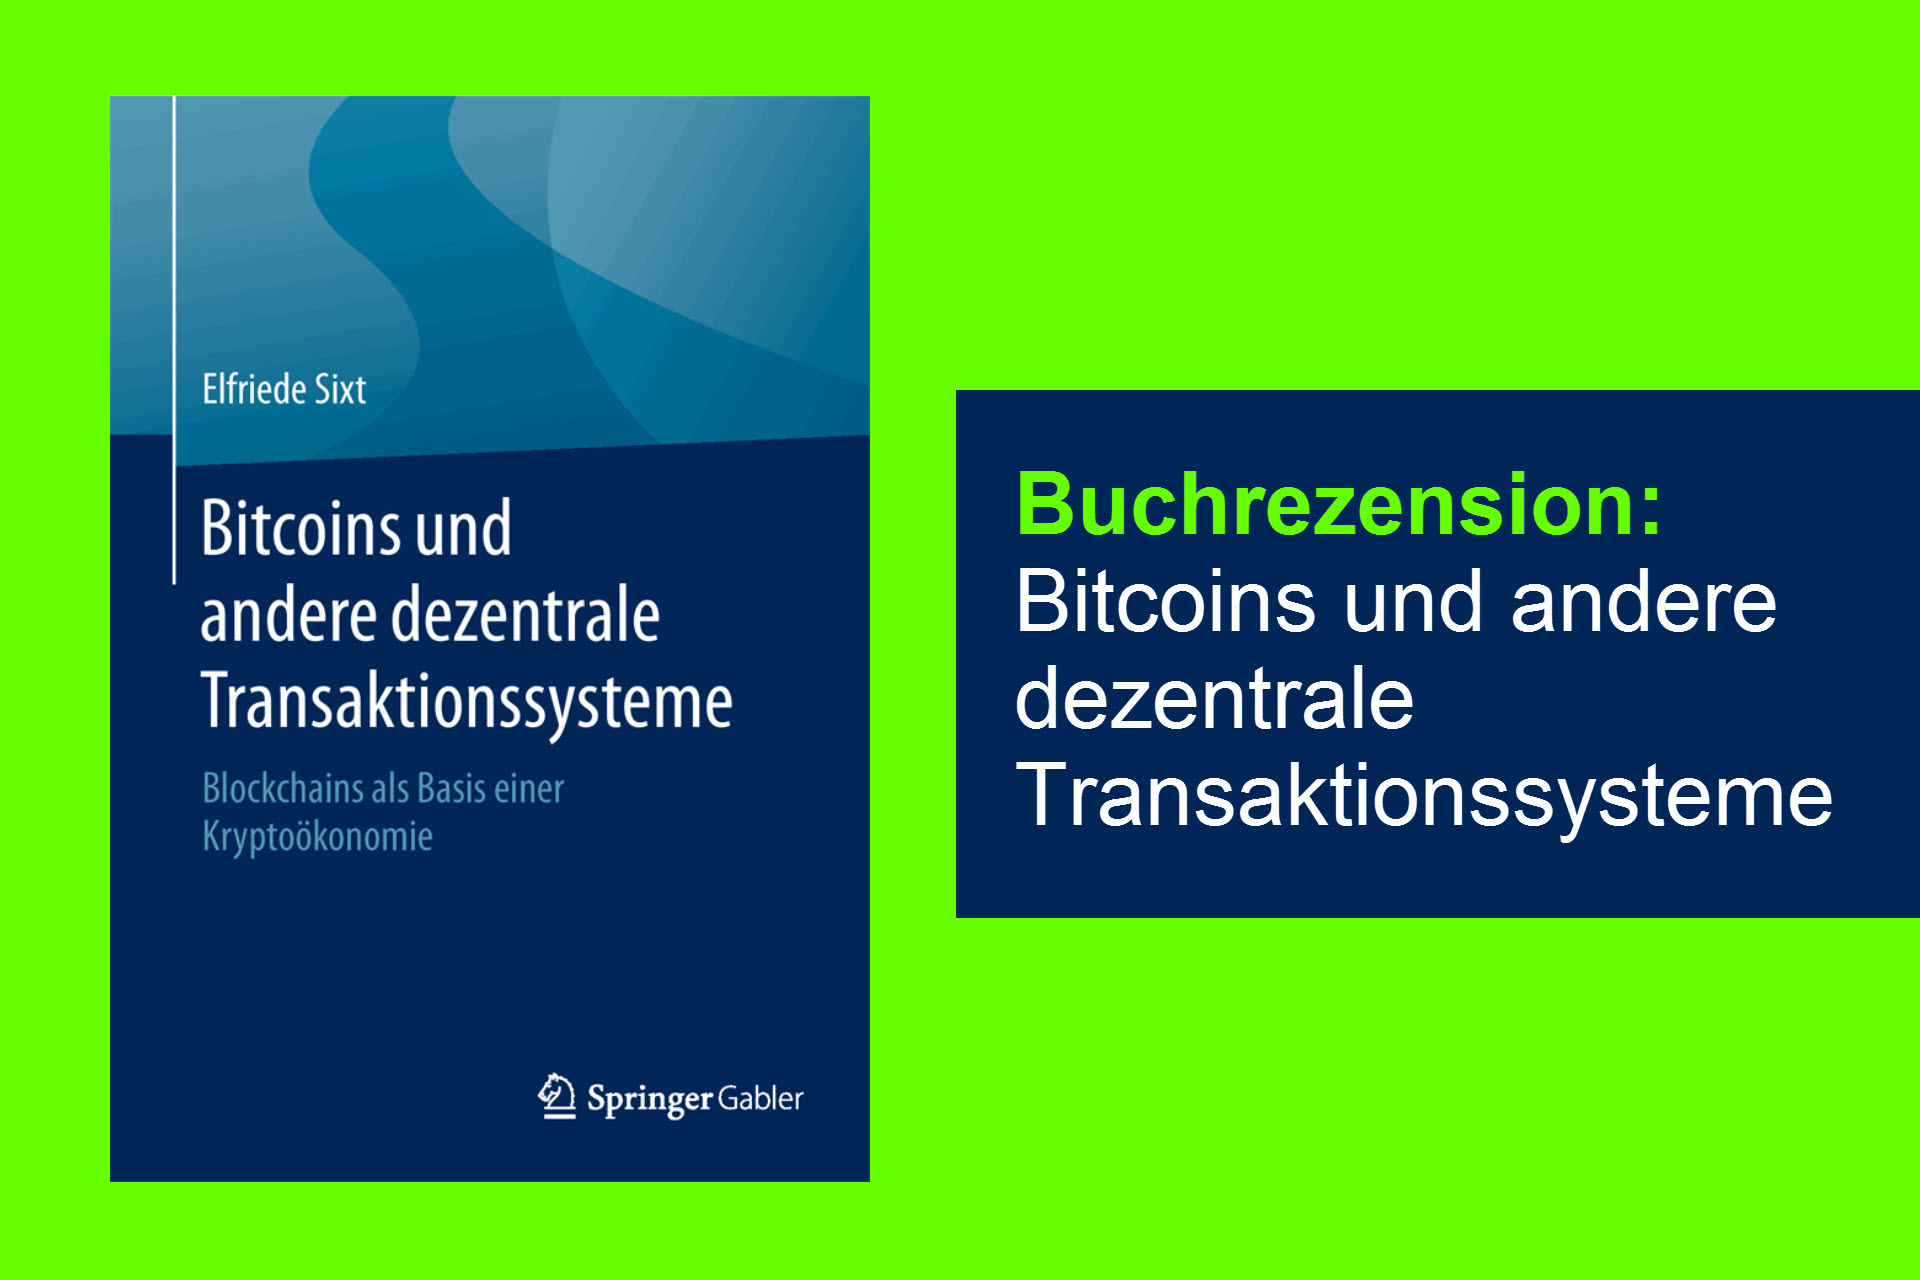 bitcoins und andre dezentrale transaktionsysteme